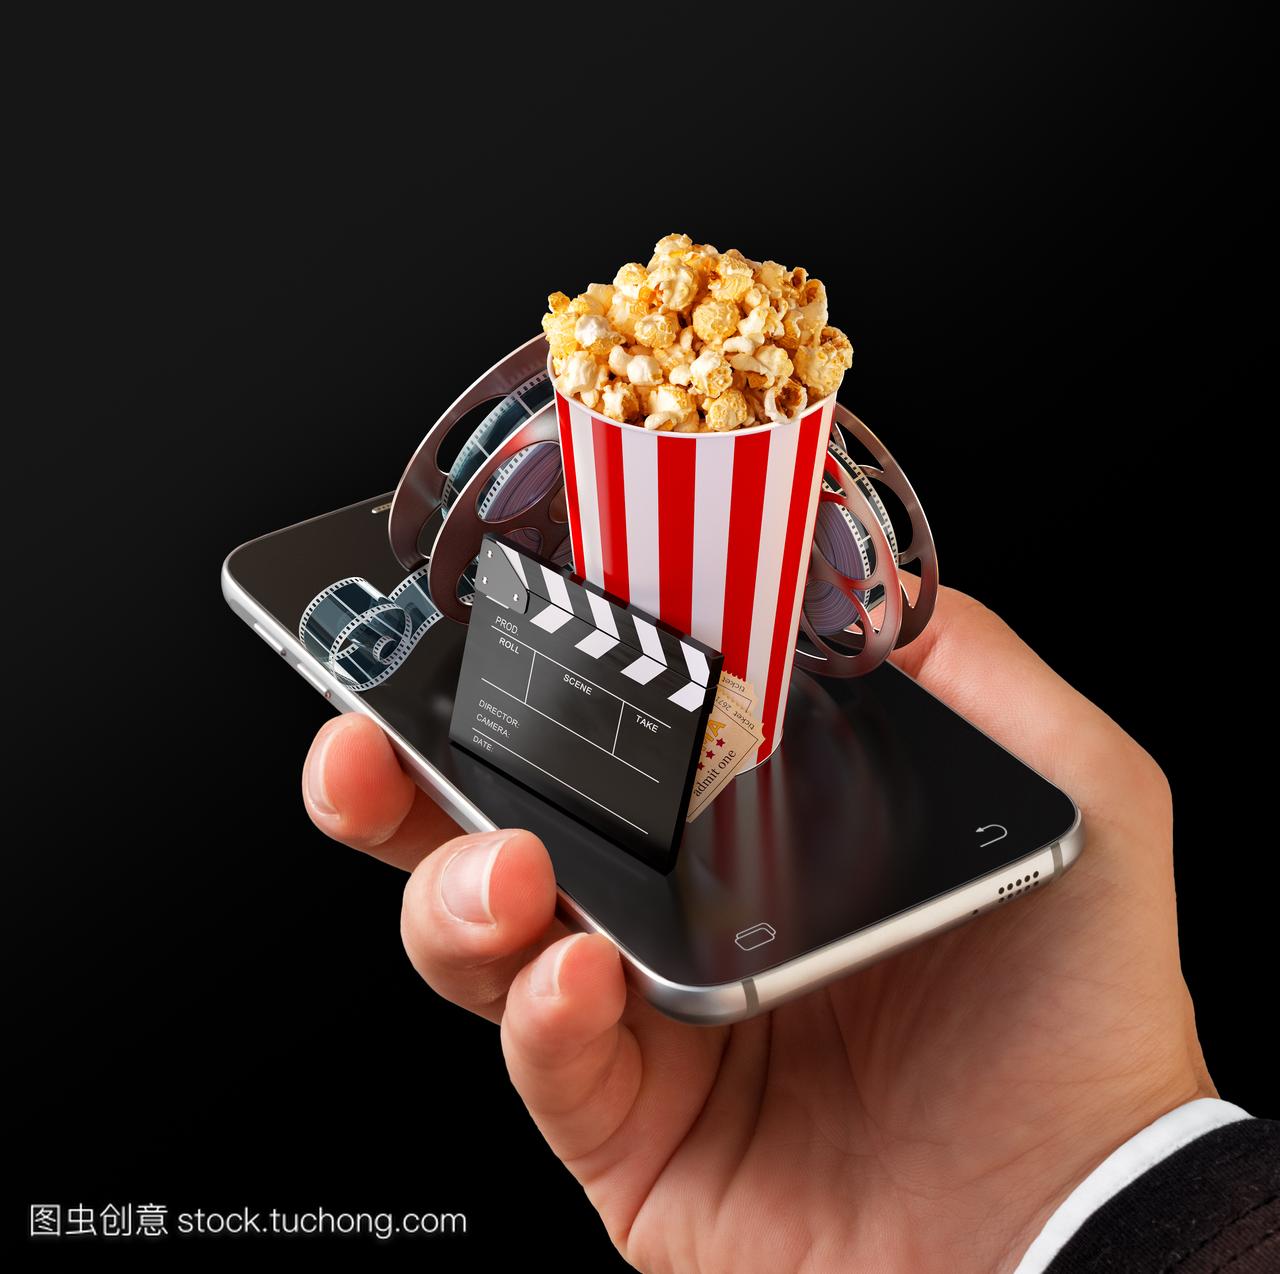 在线购买和预订电影票的智能手机应用程序。现